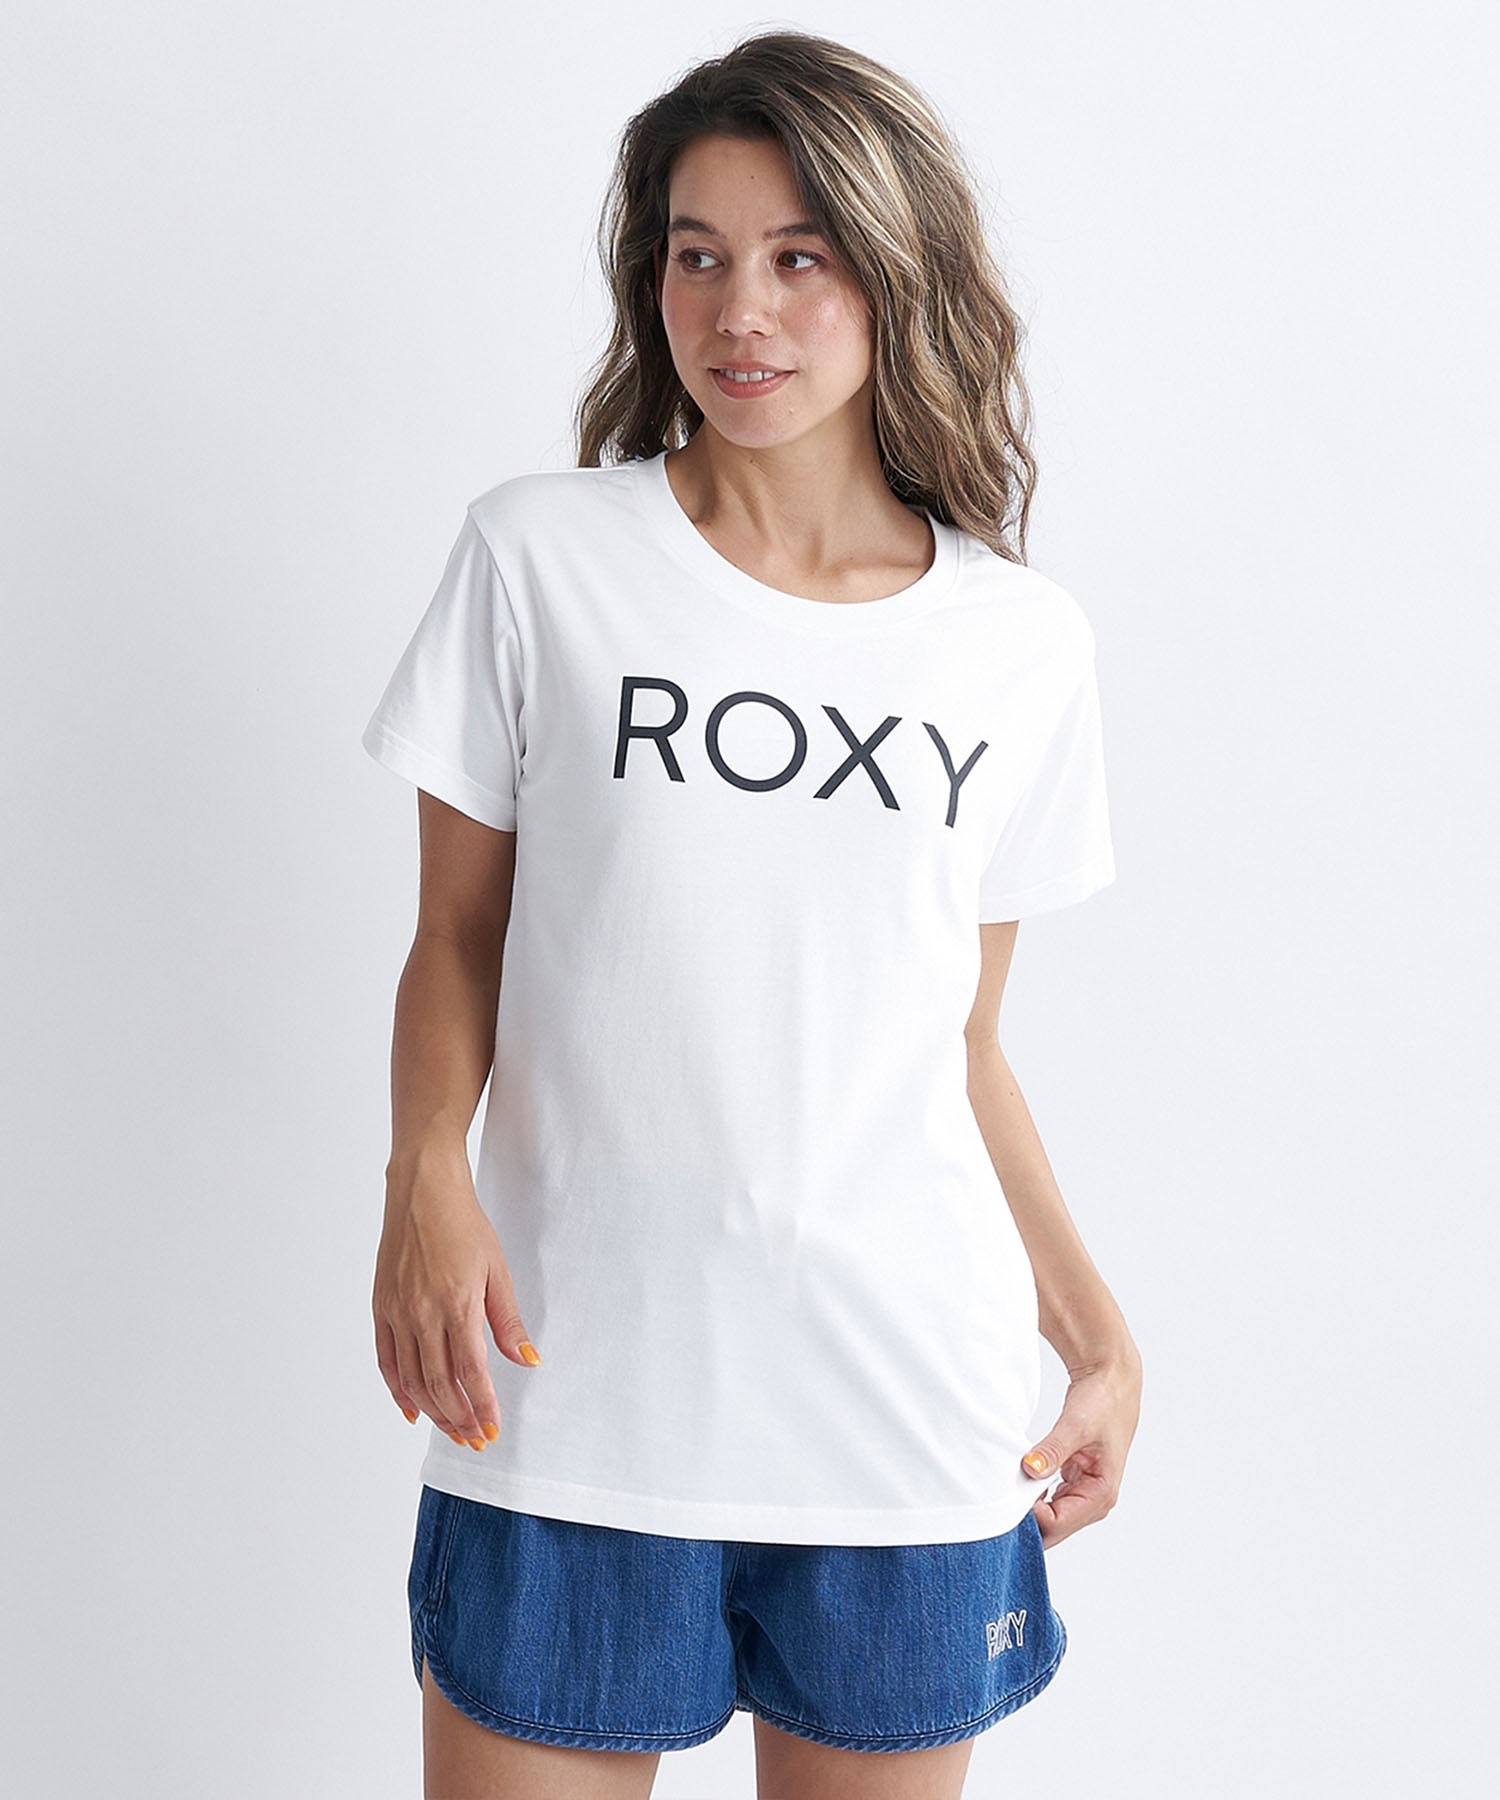 ROXY ロキシー スポーツ レディース 半袖 Tシャツ クルーネック RST241079(BLK-S)